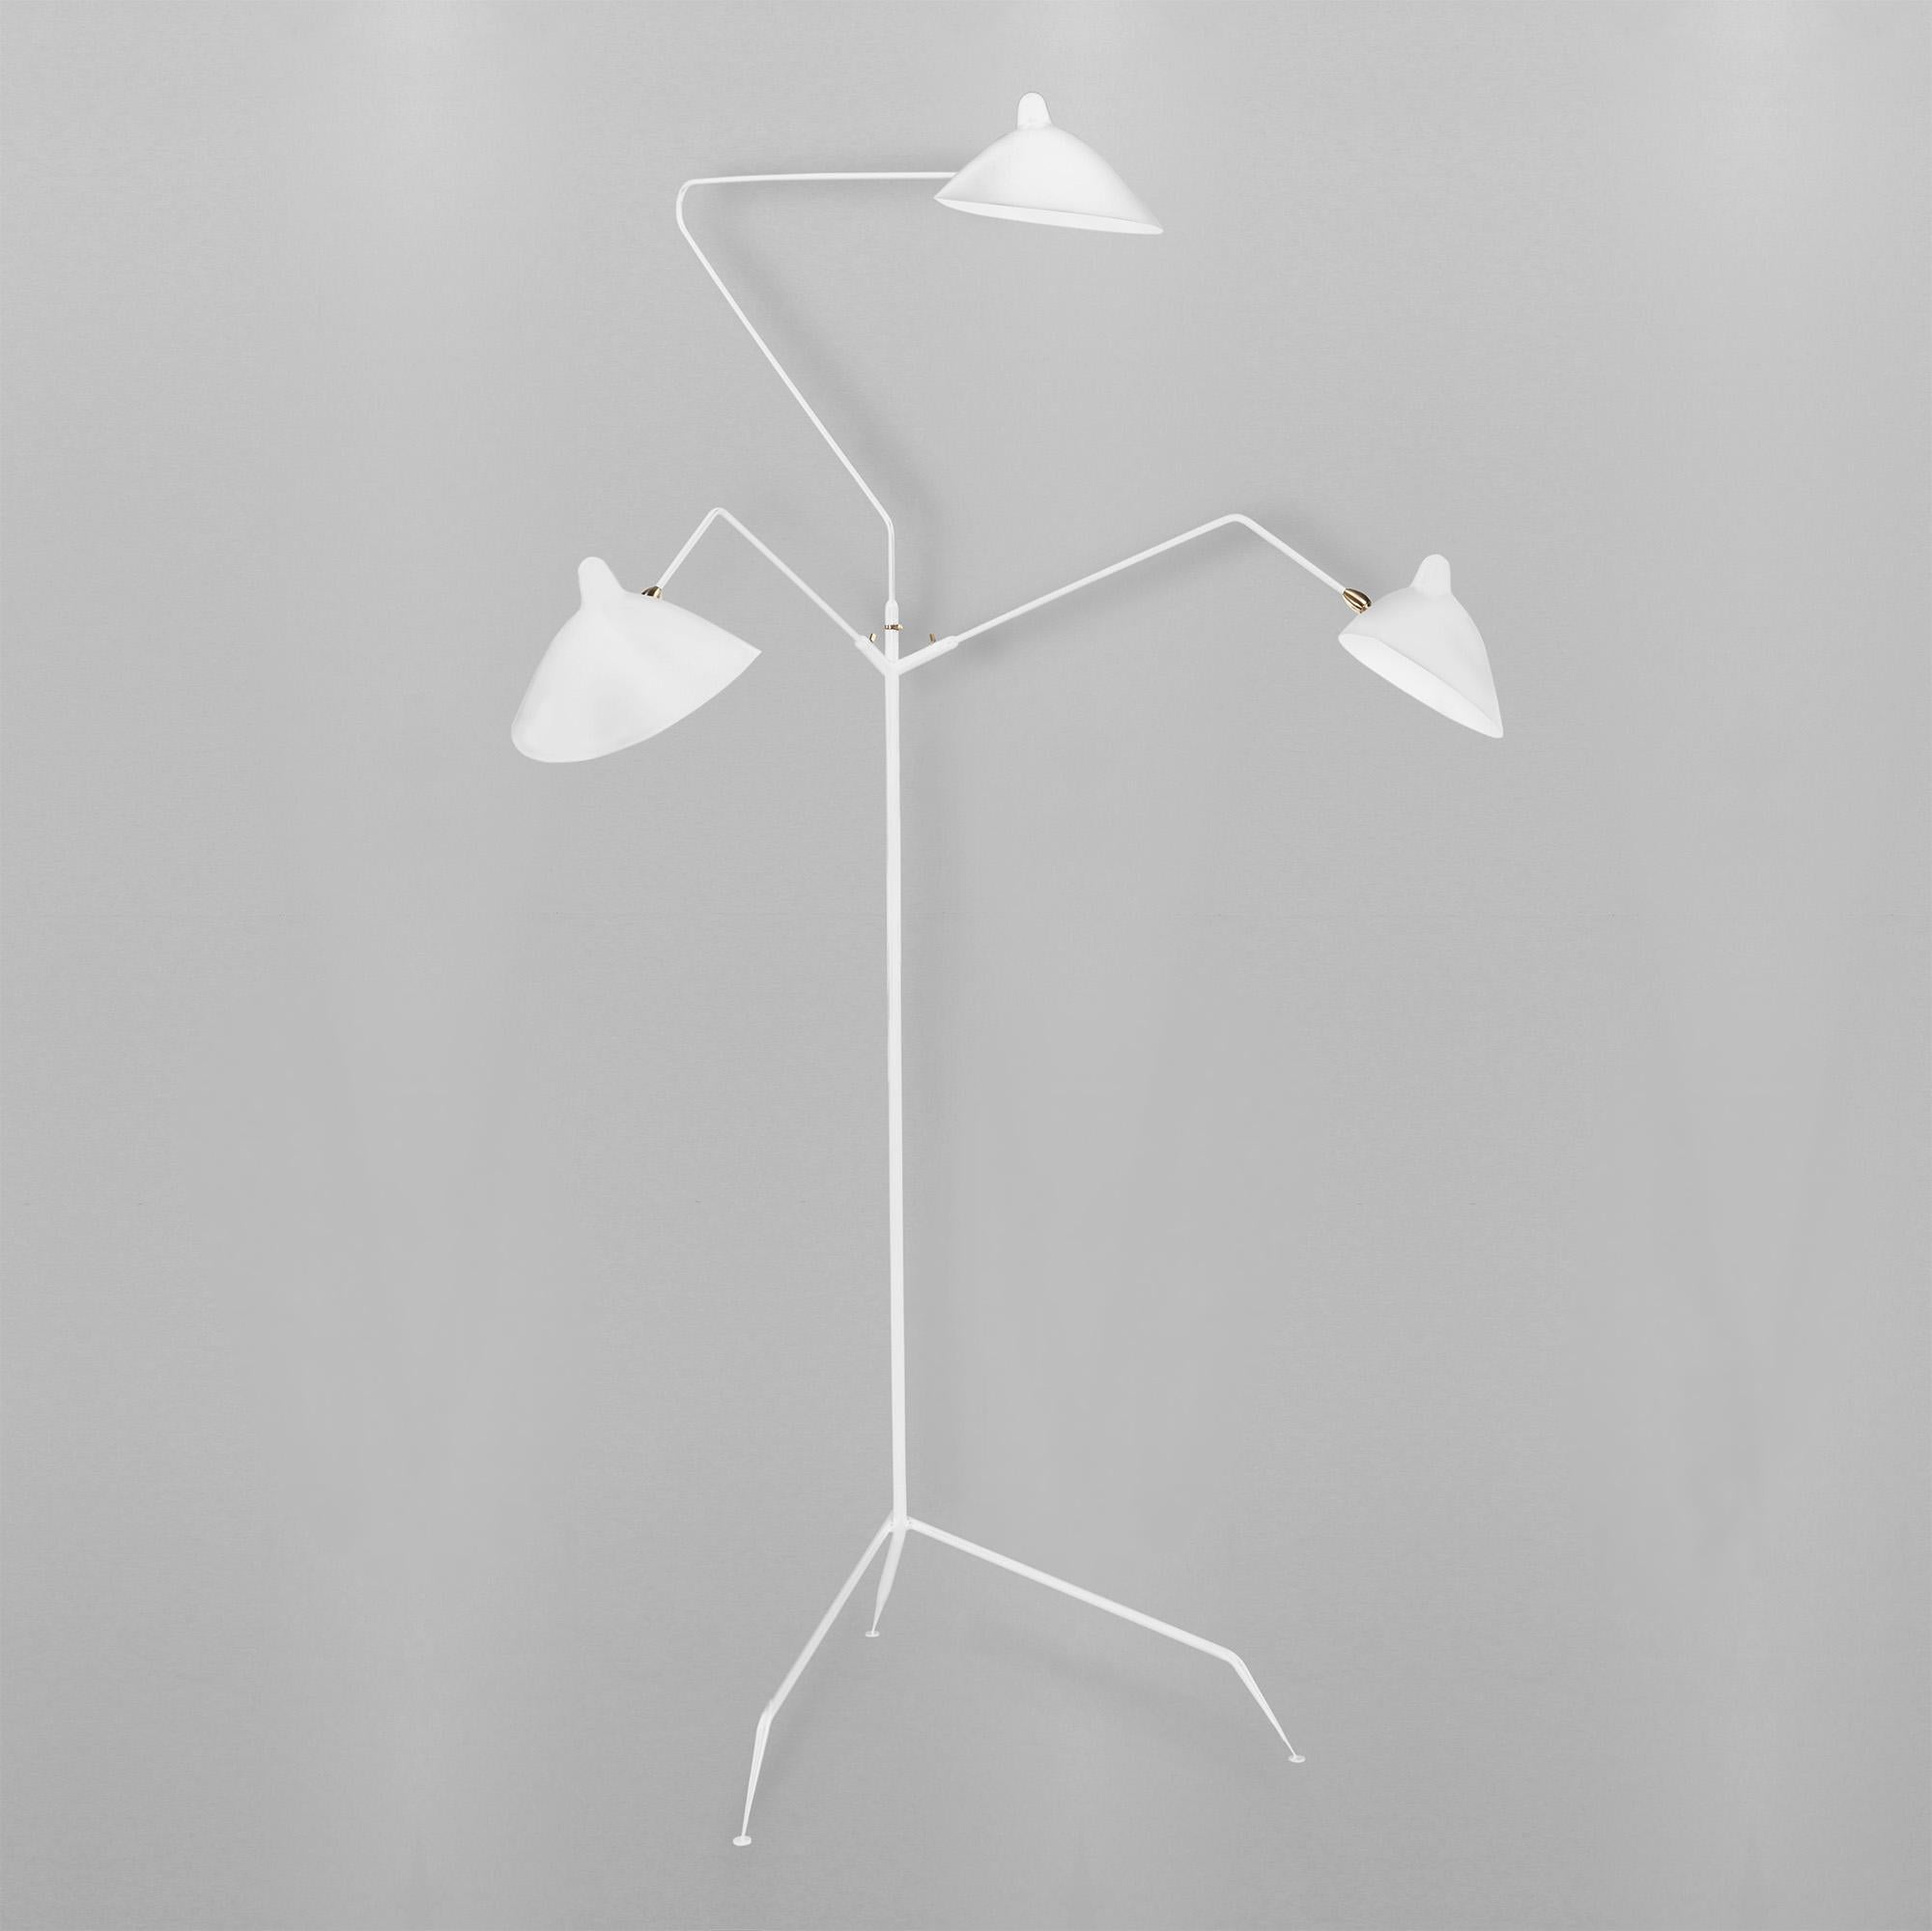 Lampadaire modèle 'Three Rotating Arms Floor Lamp' conçu par Serge Mouille en 1952.

Fabriqué par les Editions Serge Mouille en France. La production des lampes, des appliques et des lampadaires est réalisée de manière artisanale avec les mêmes